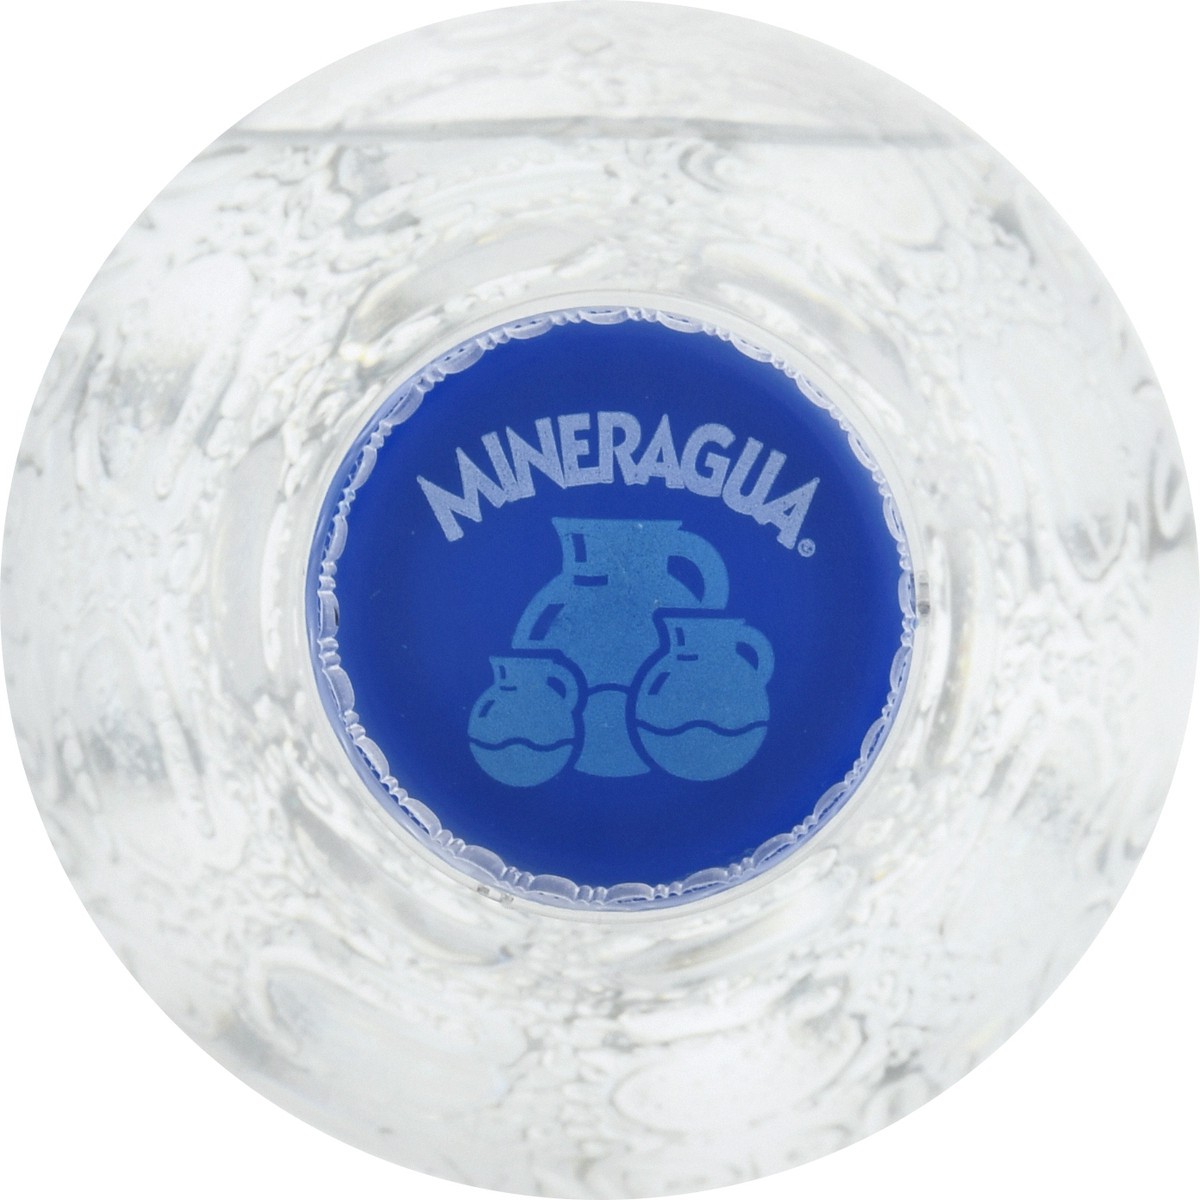 slide 3 of 13, Mineragua Sparkling Water 16.9 oz, 16.9 fl oz